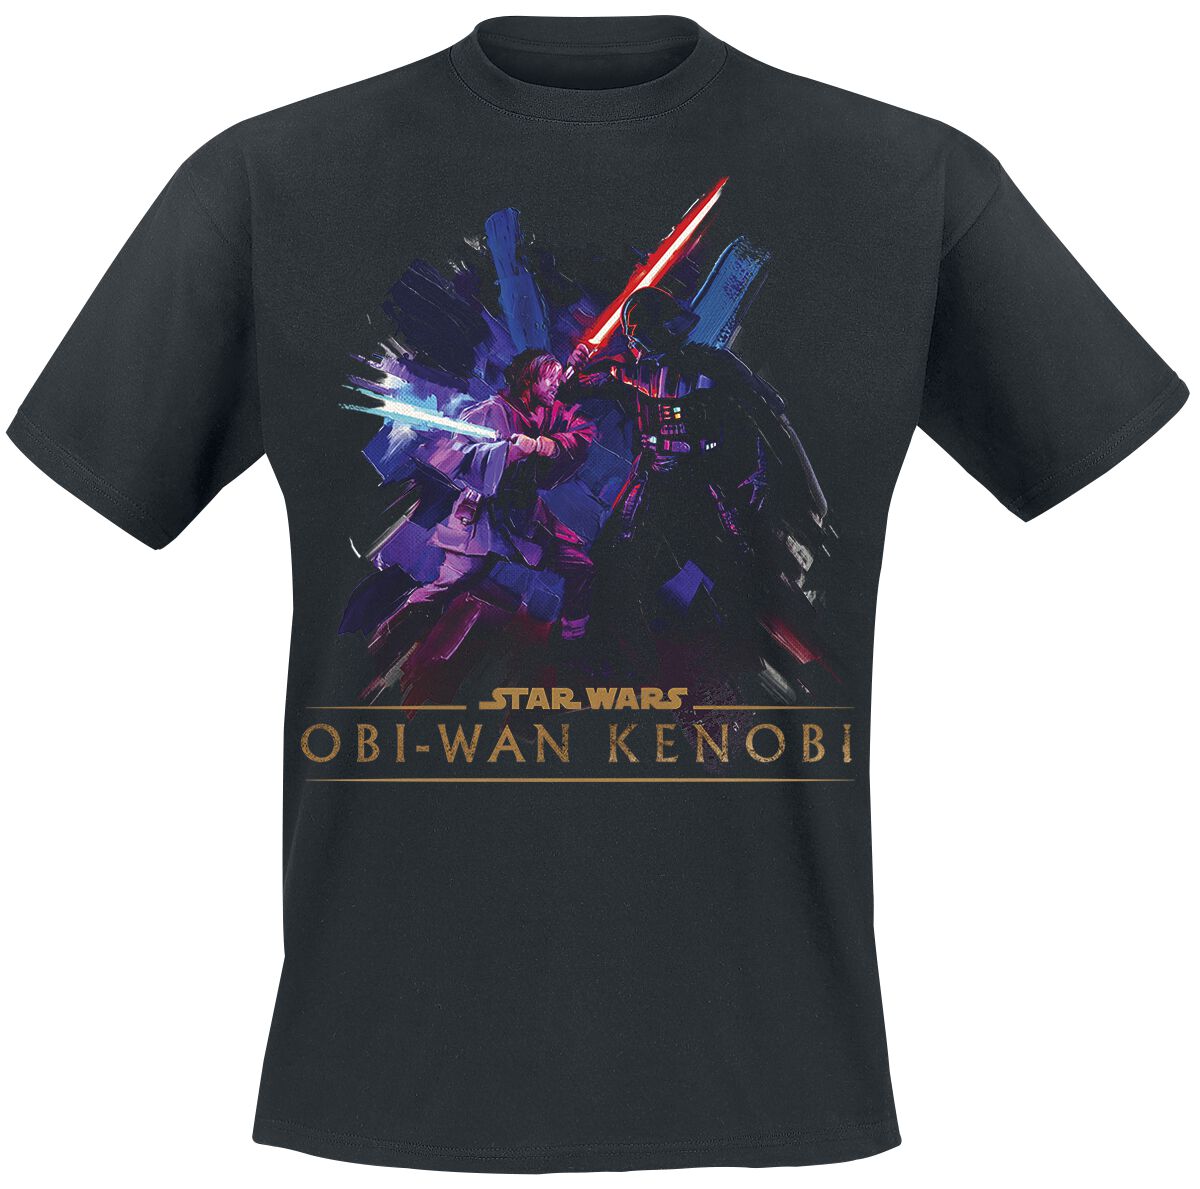 Star Wars T-Shirt - Obi-Wan Kenobi - Vintage - S bis XXL - für Männer - Größe L - schwarz  - EMP exklusives Merchandise!